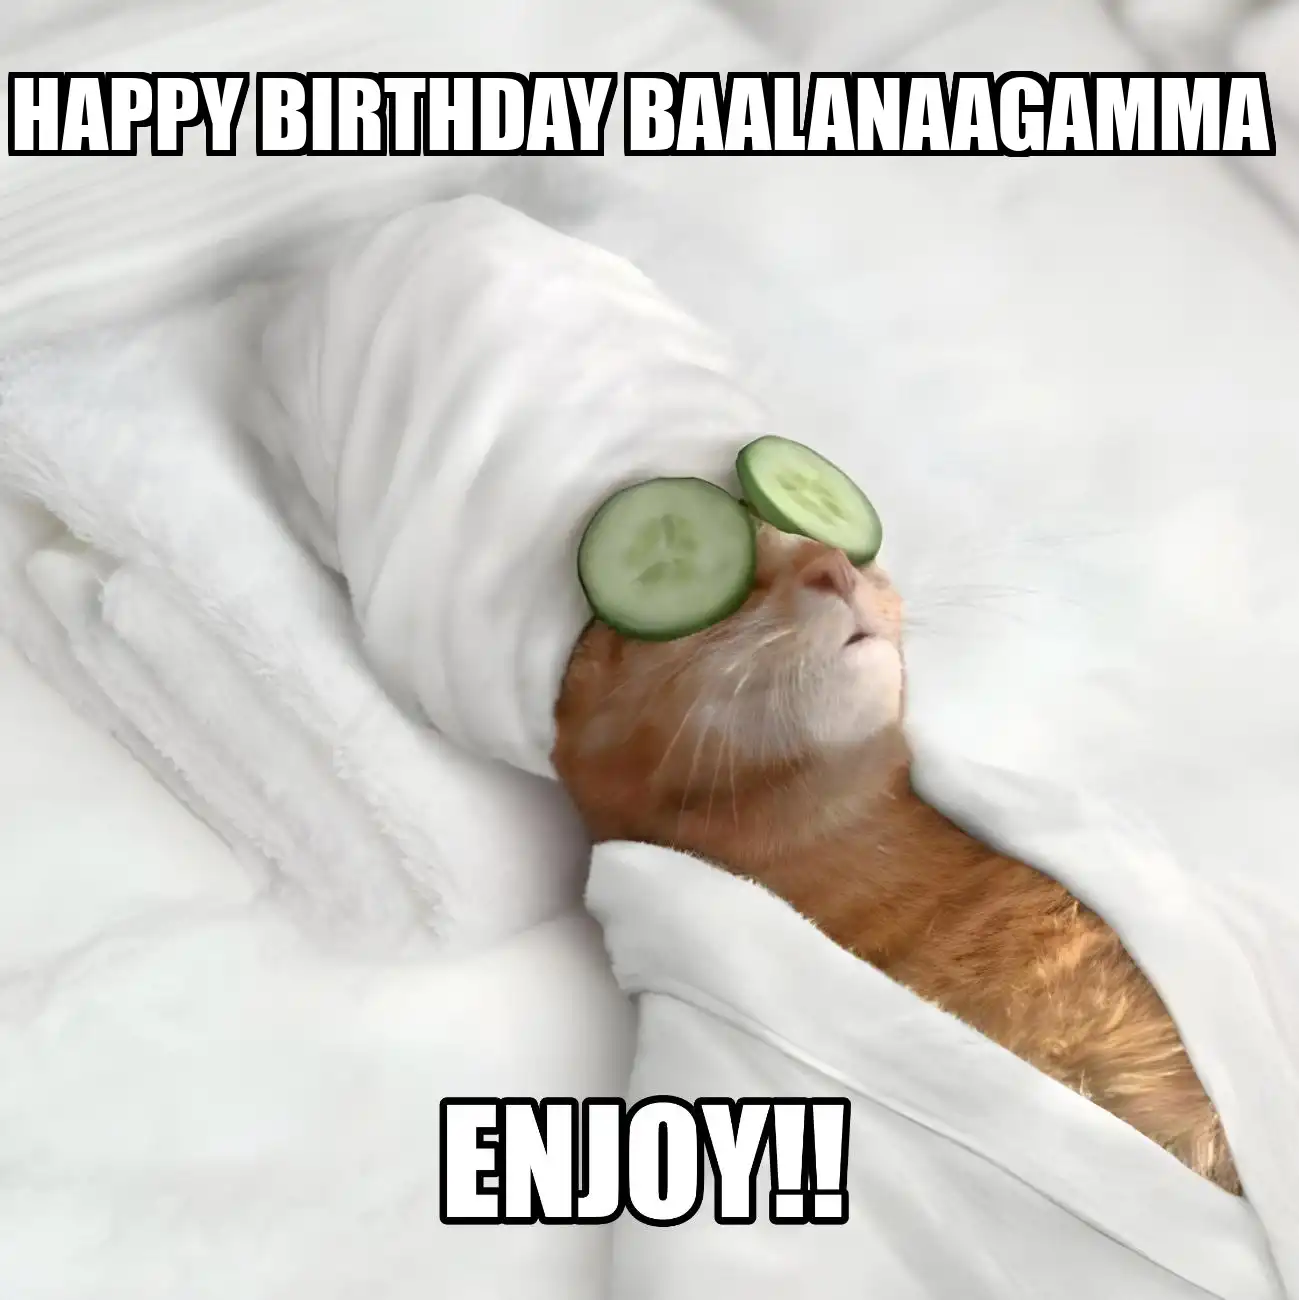 Happy Birthday Baalanaagamma Enjoy Cat Meme